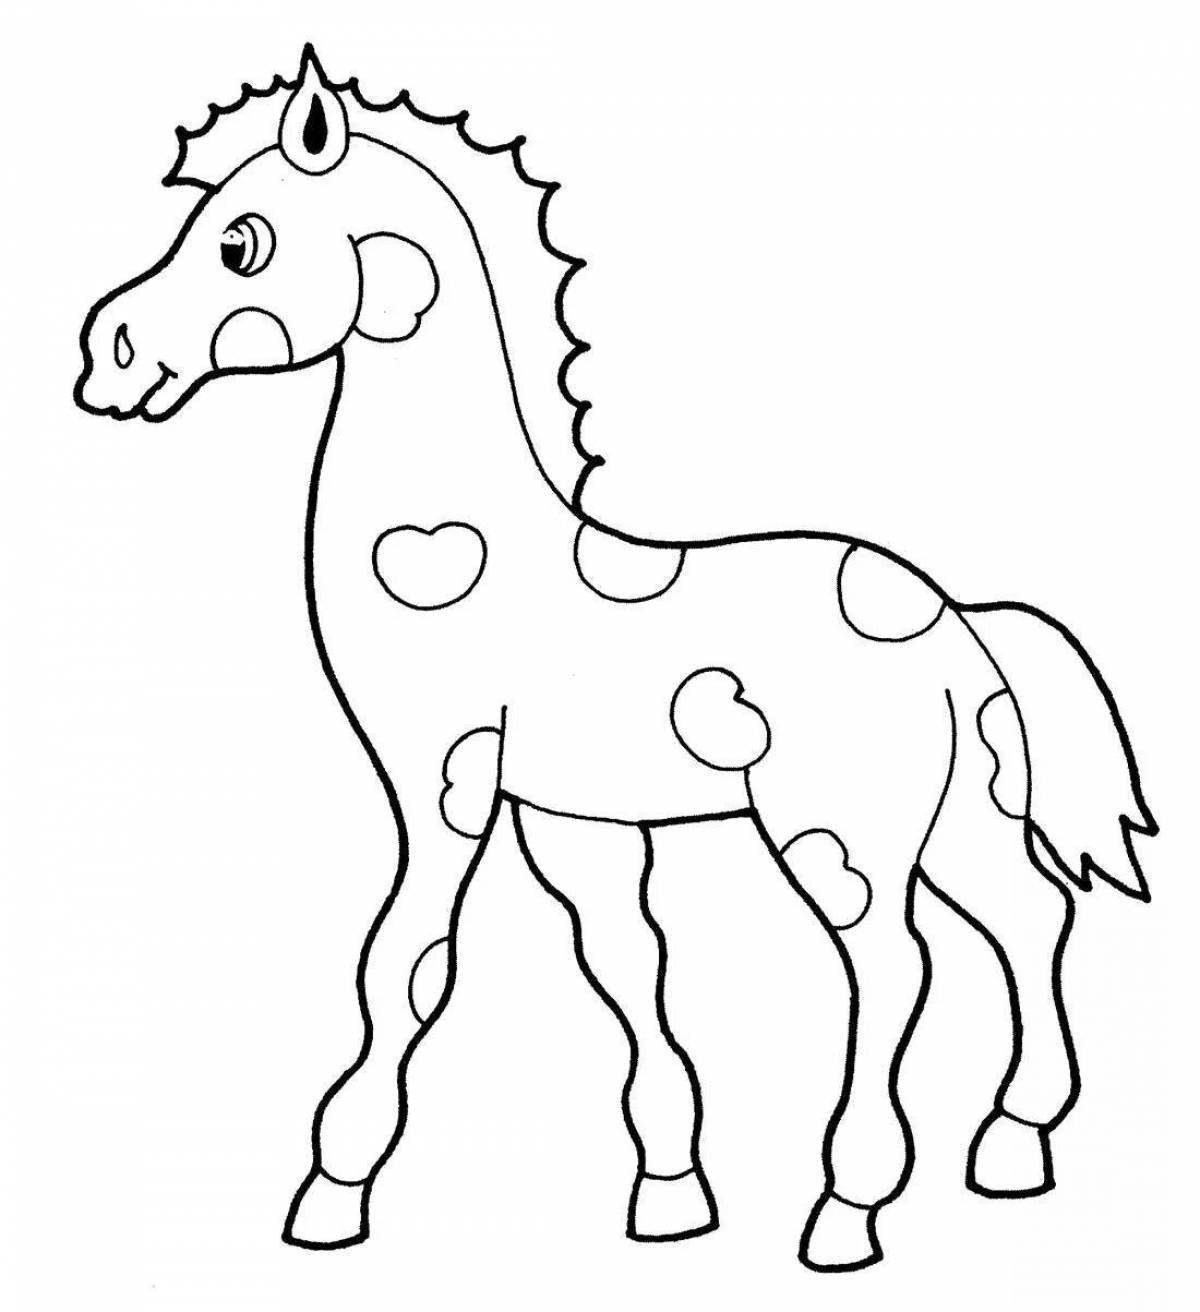 Раскрашиваем лошадку. Лошадка раскраска для детей. Раскраска конь. Конь раскраска для детей. Лошадка разукрашка для малышей.